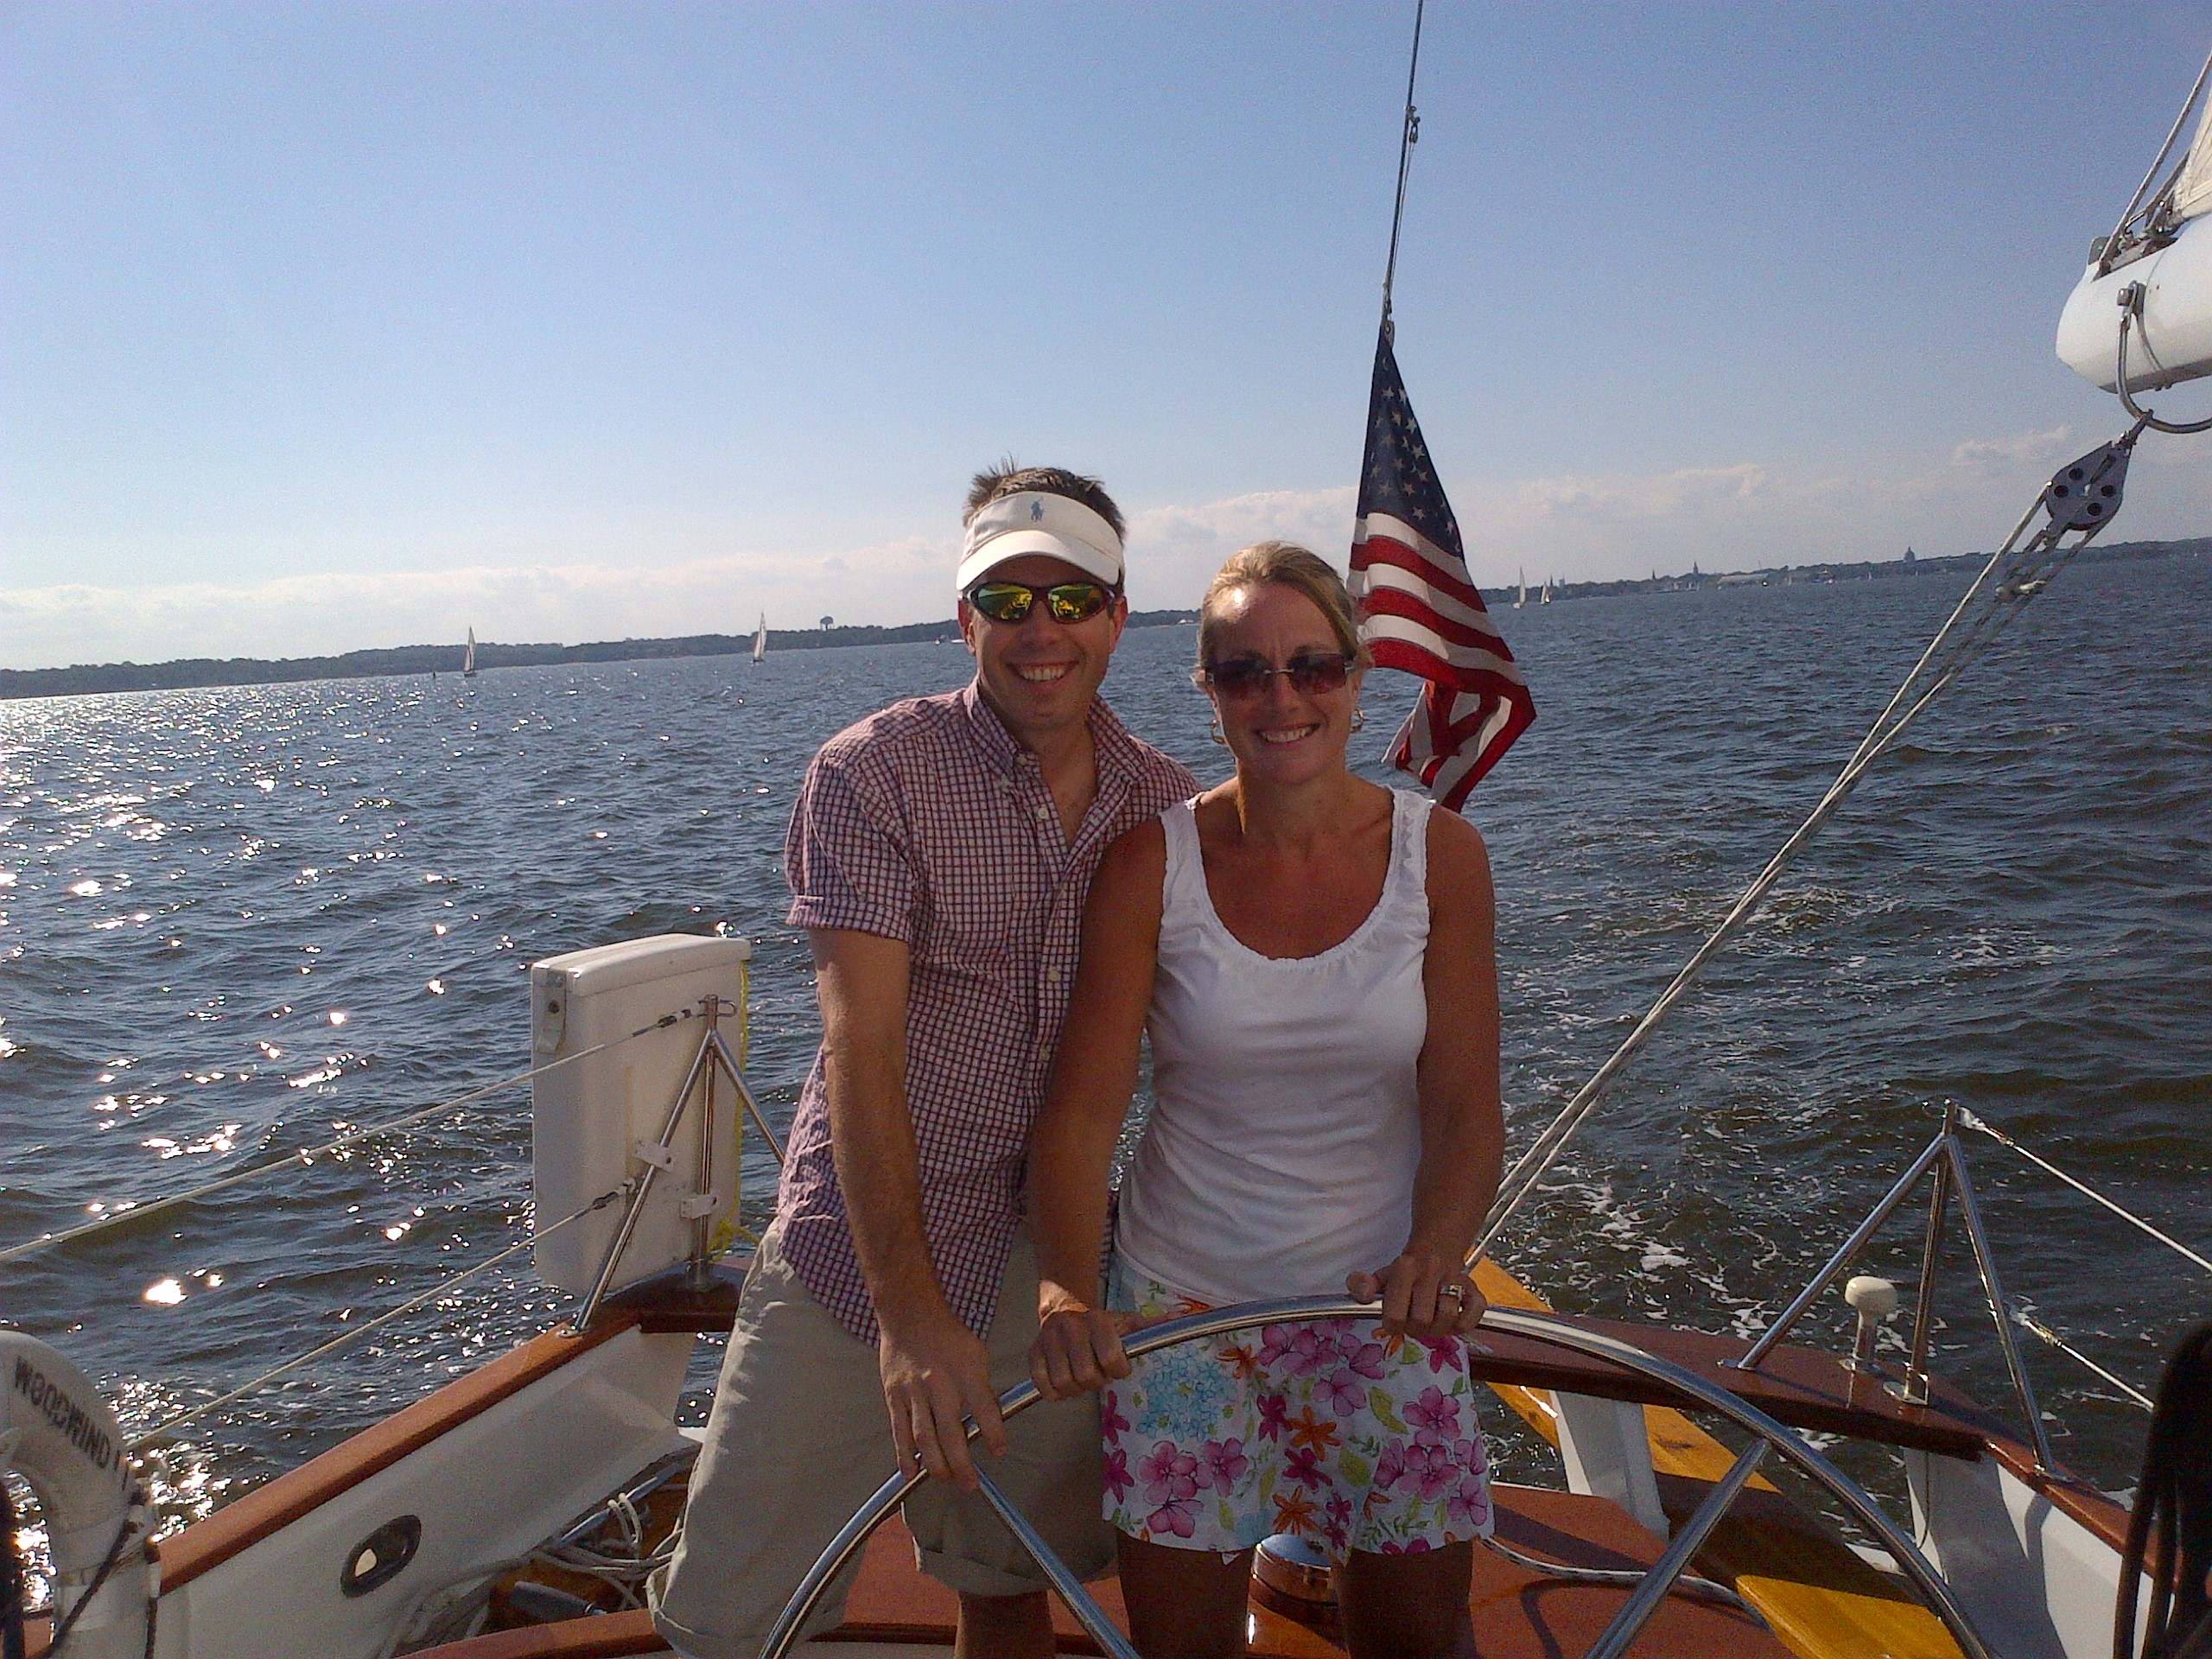 Man and women steering the schooner together